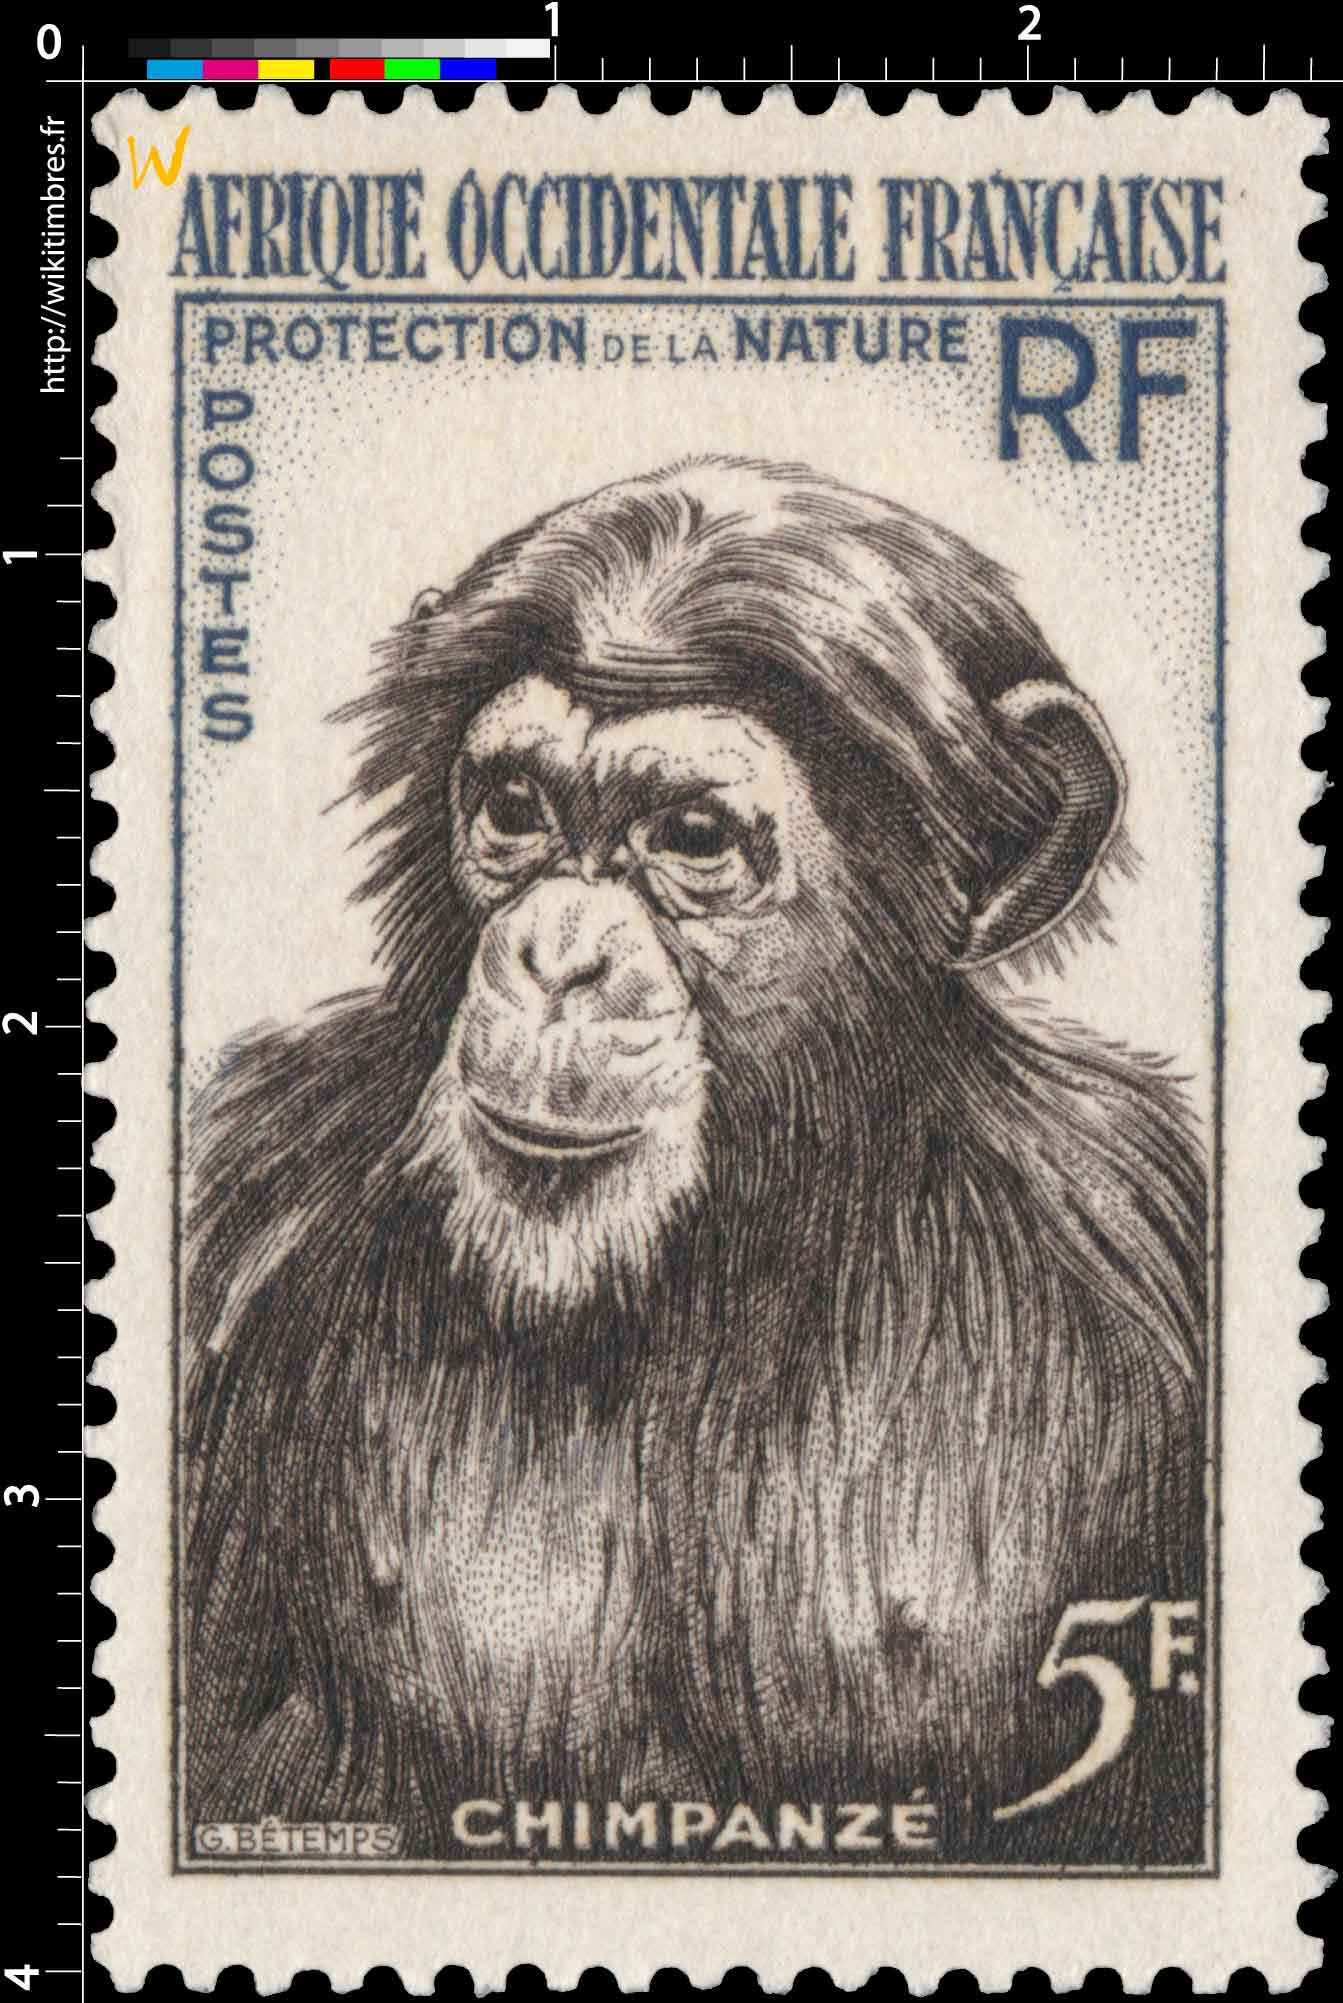 Afrique Occidentale Française - Protection de la nature - Chimpanzé